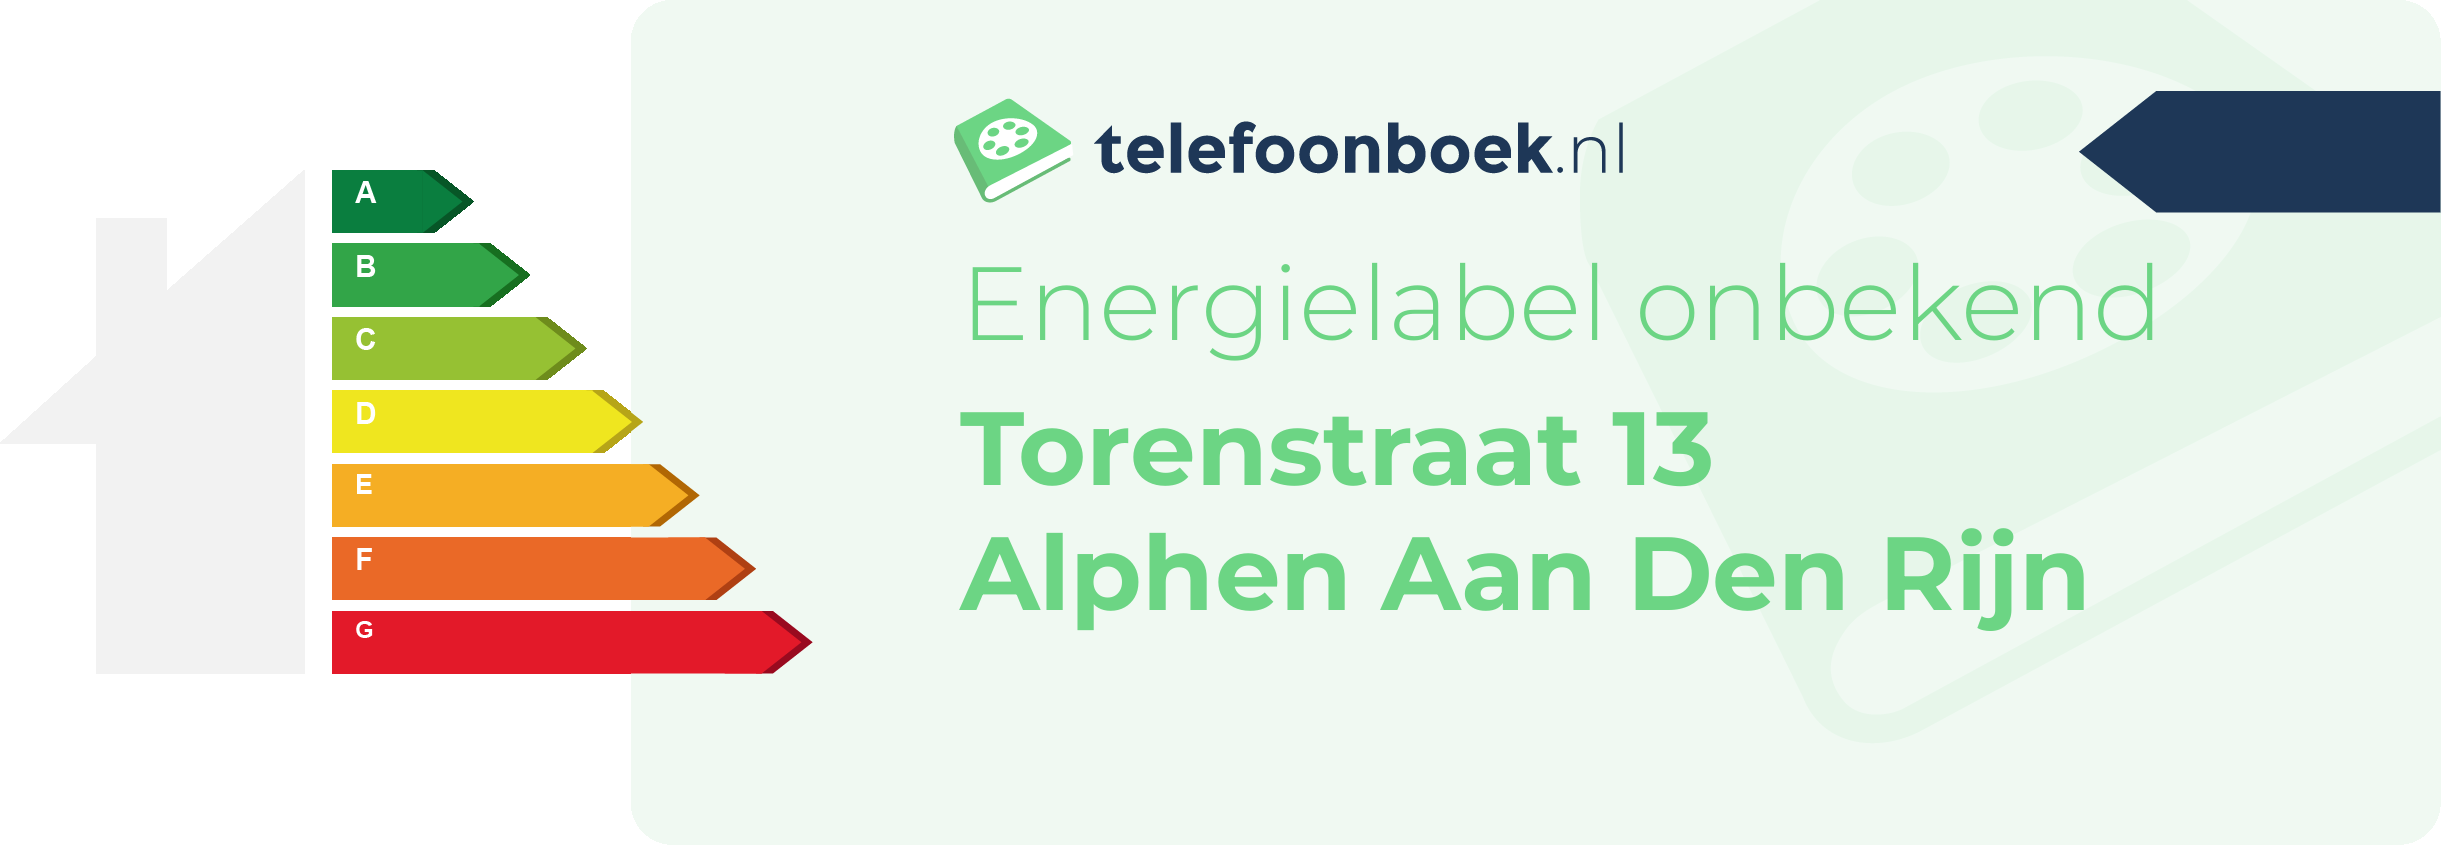 Energielabel Torenstraat 13 Alphen Aan Den Rijn